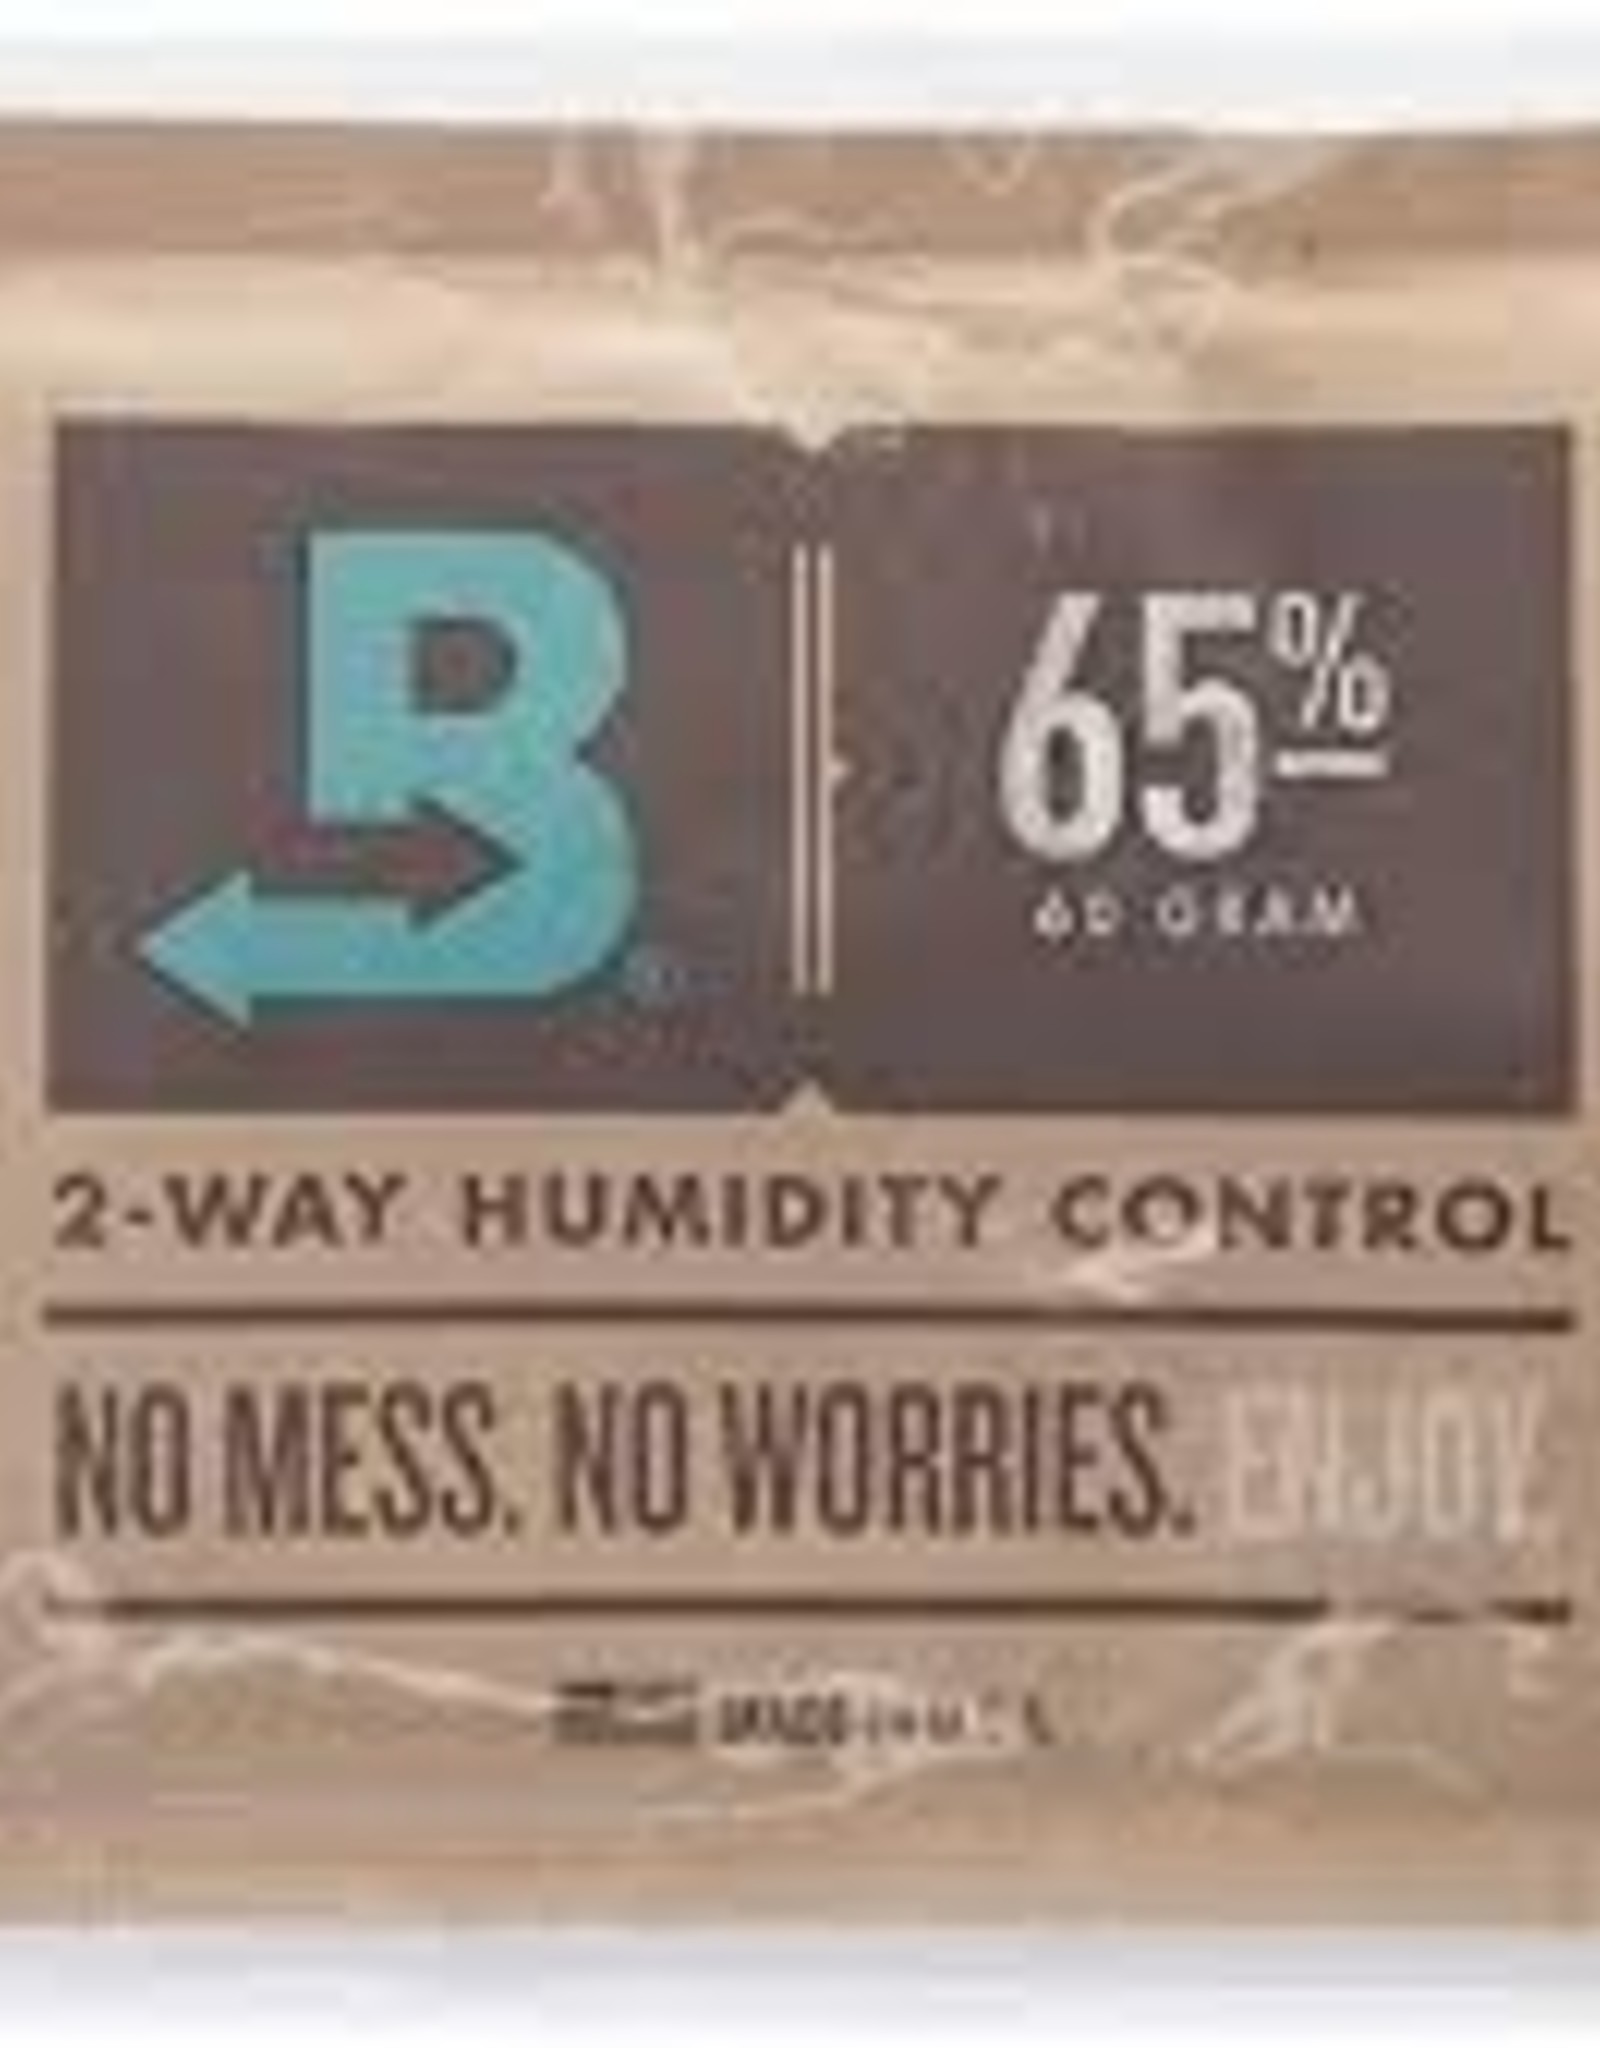 Boveda Boveda 60g 65% Humidity Control